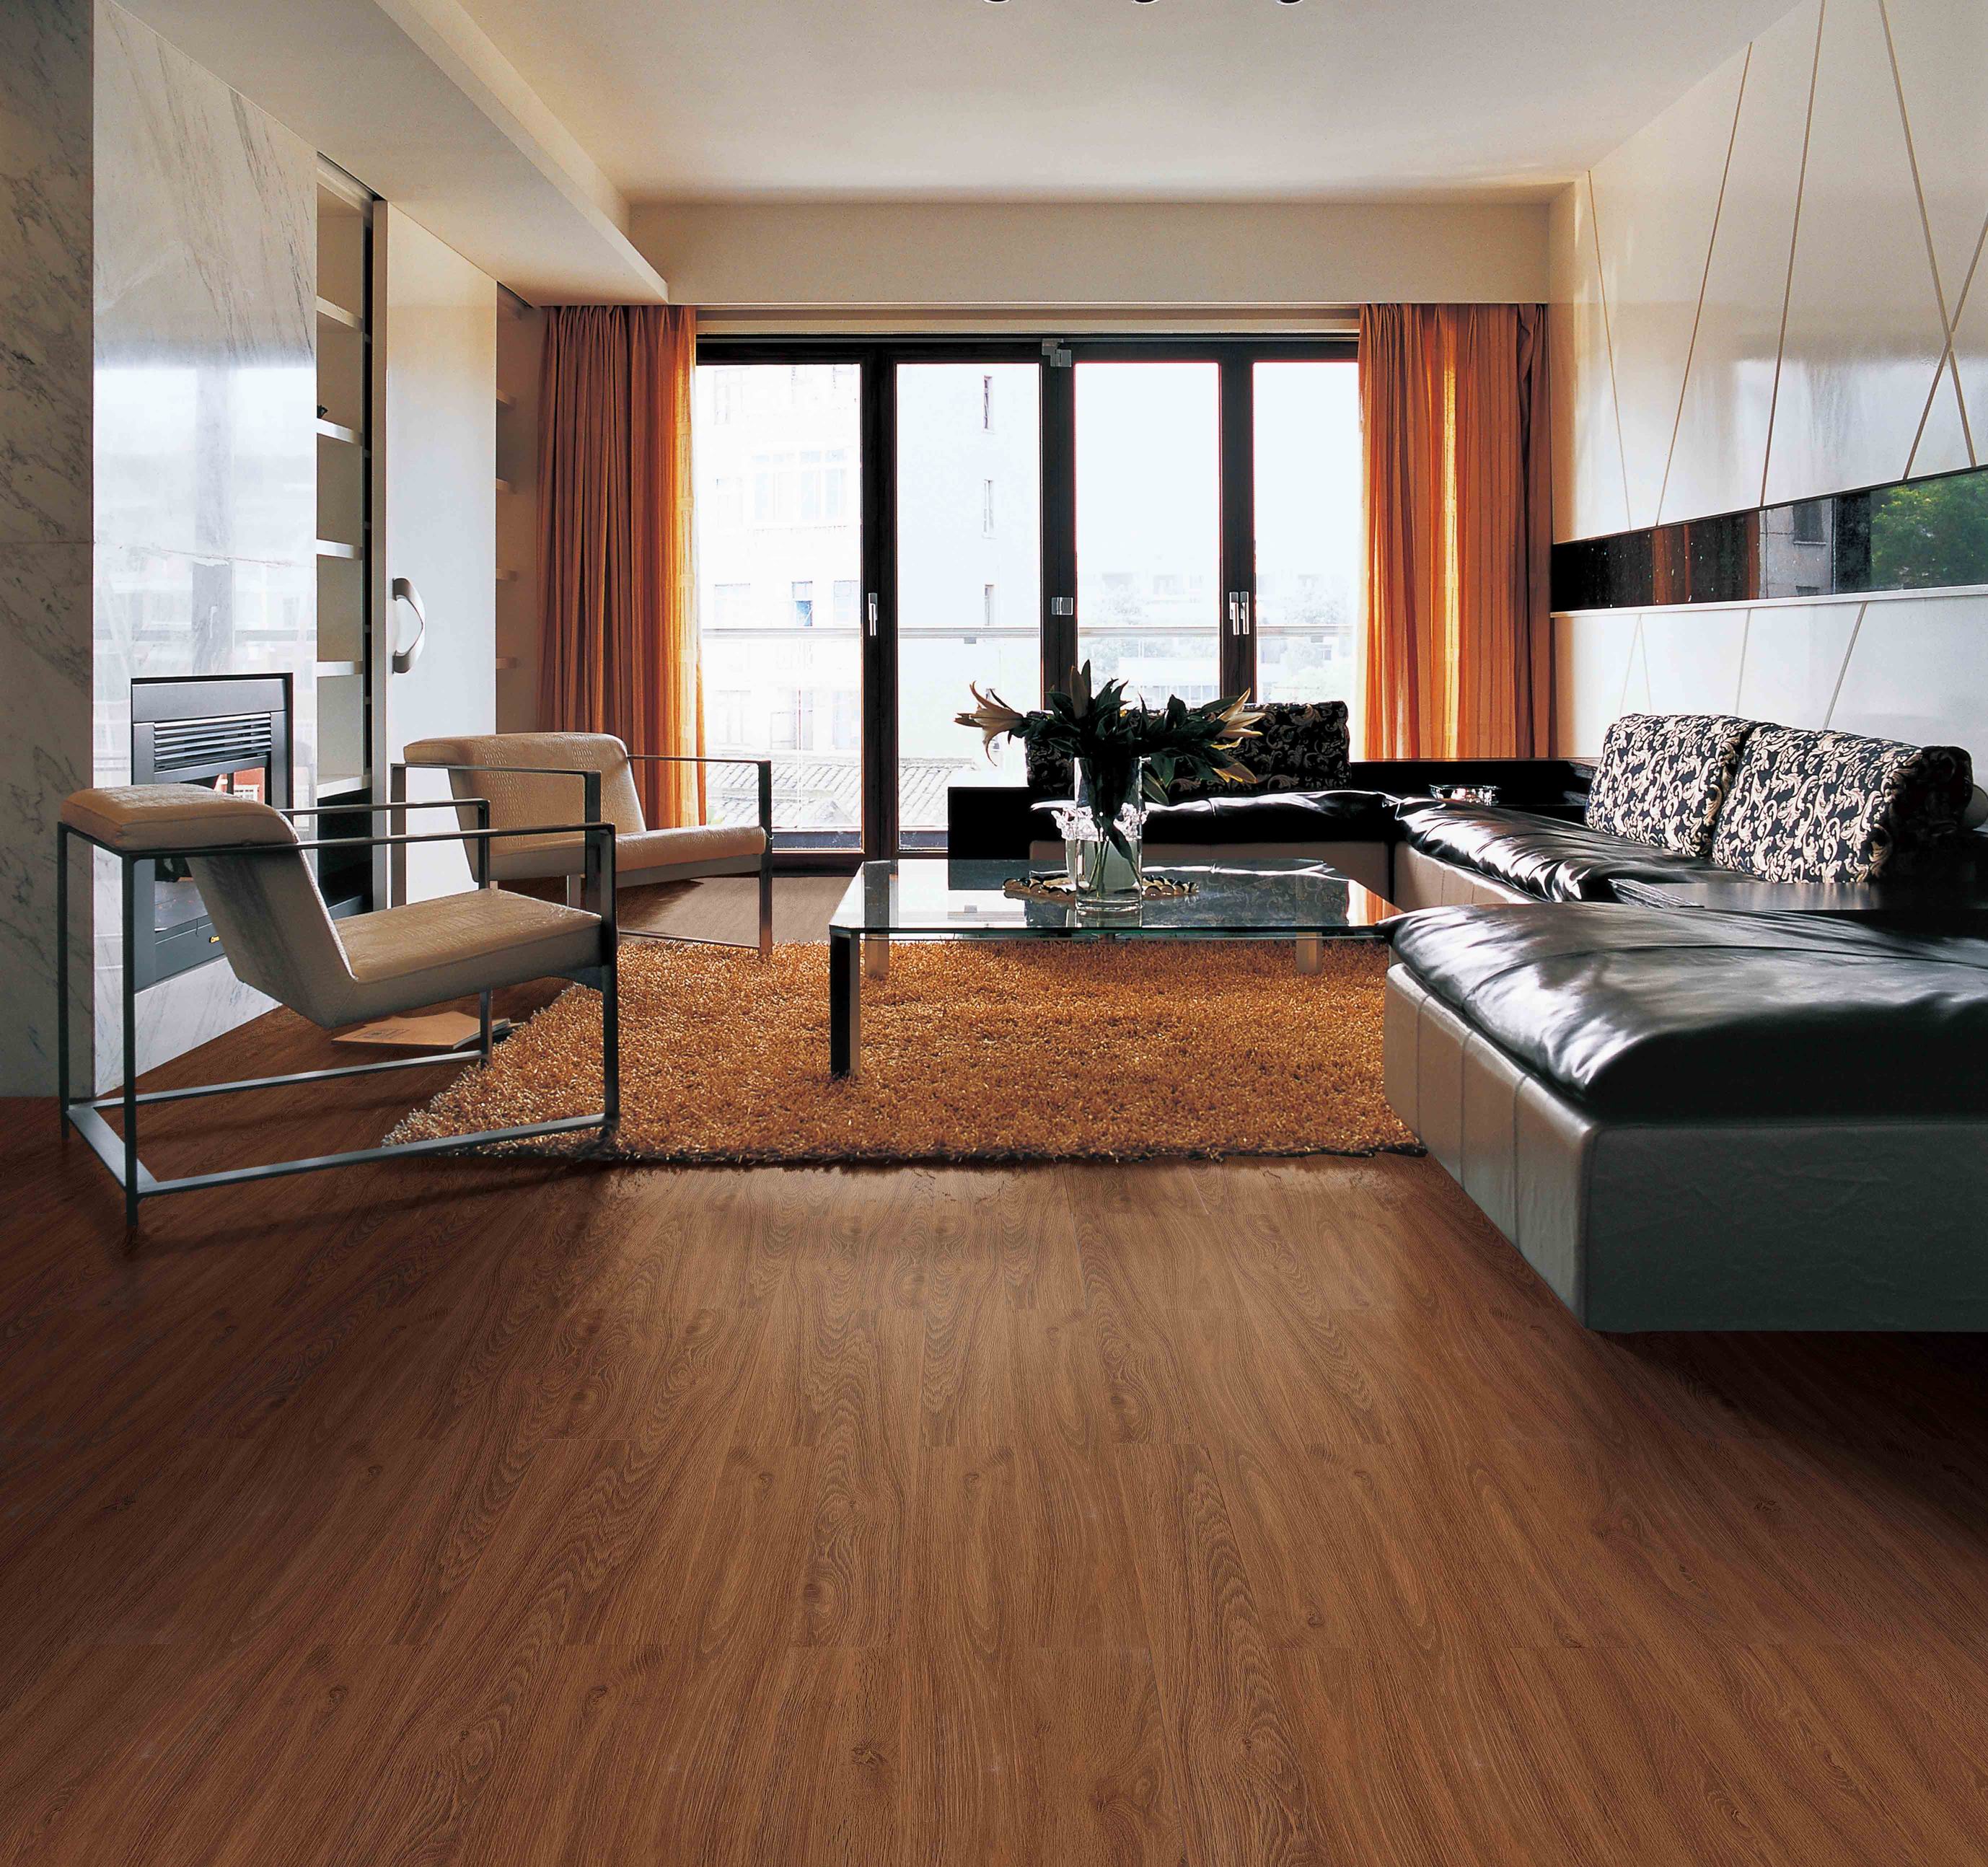 设计师都建议铺木地板,但是你知道为什么要铺木地板吗?